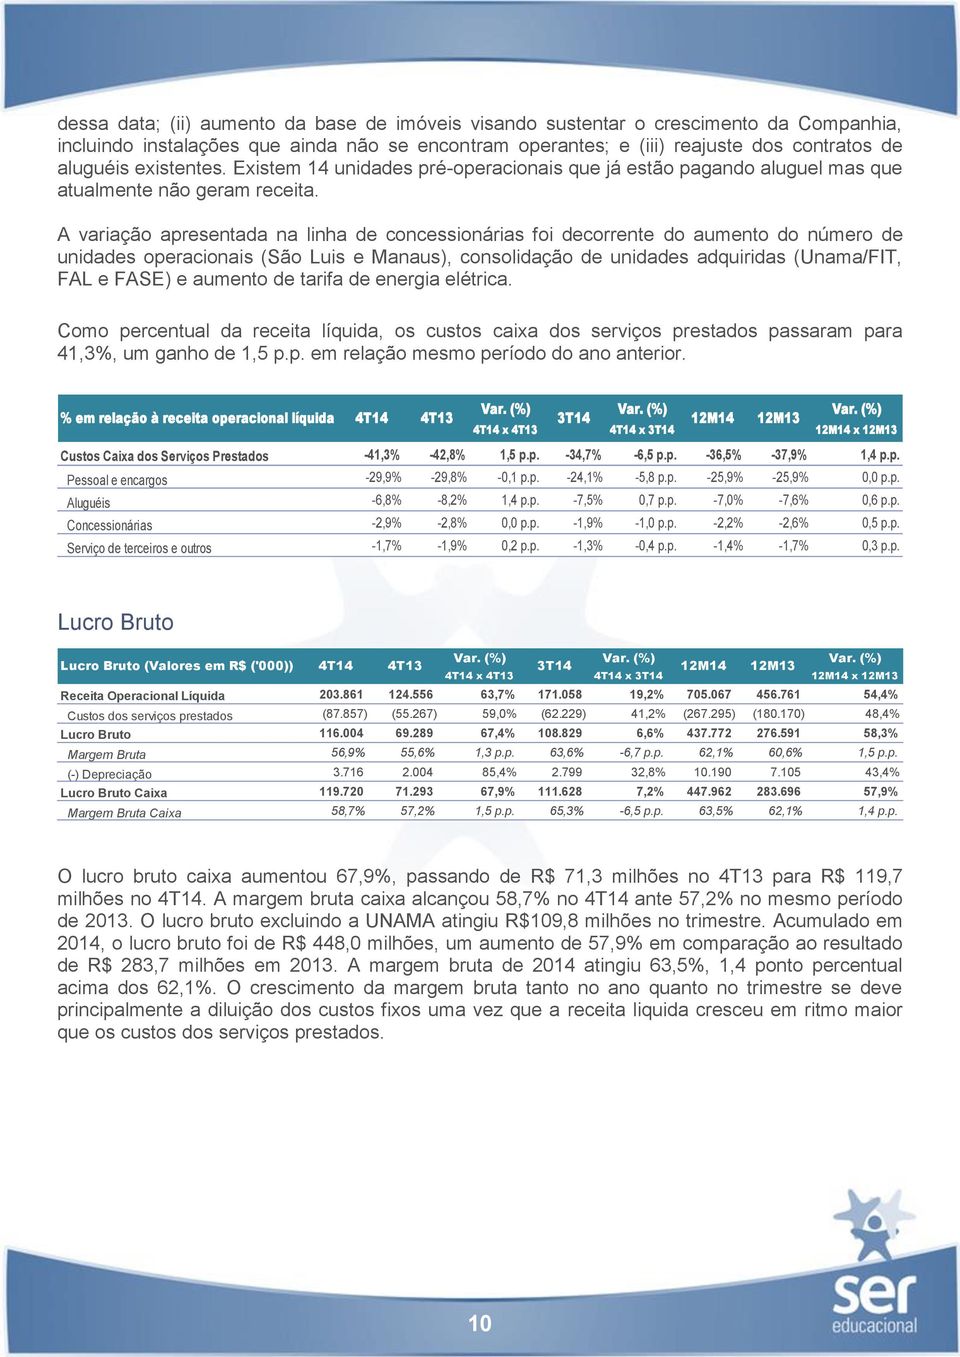 A variação apresentada na linha de concessionárias foi decorrente do aumento do número de unidades operacionais (São Luis e Manaus), consolidação de unidades adquiridas (Unama/FIT, FAL e FASE) e